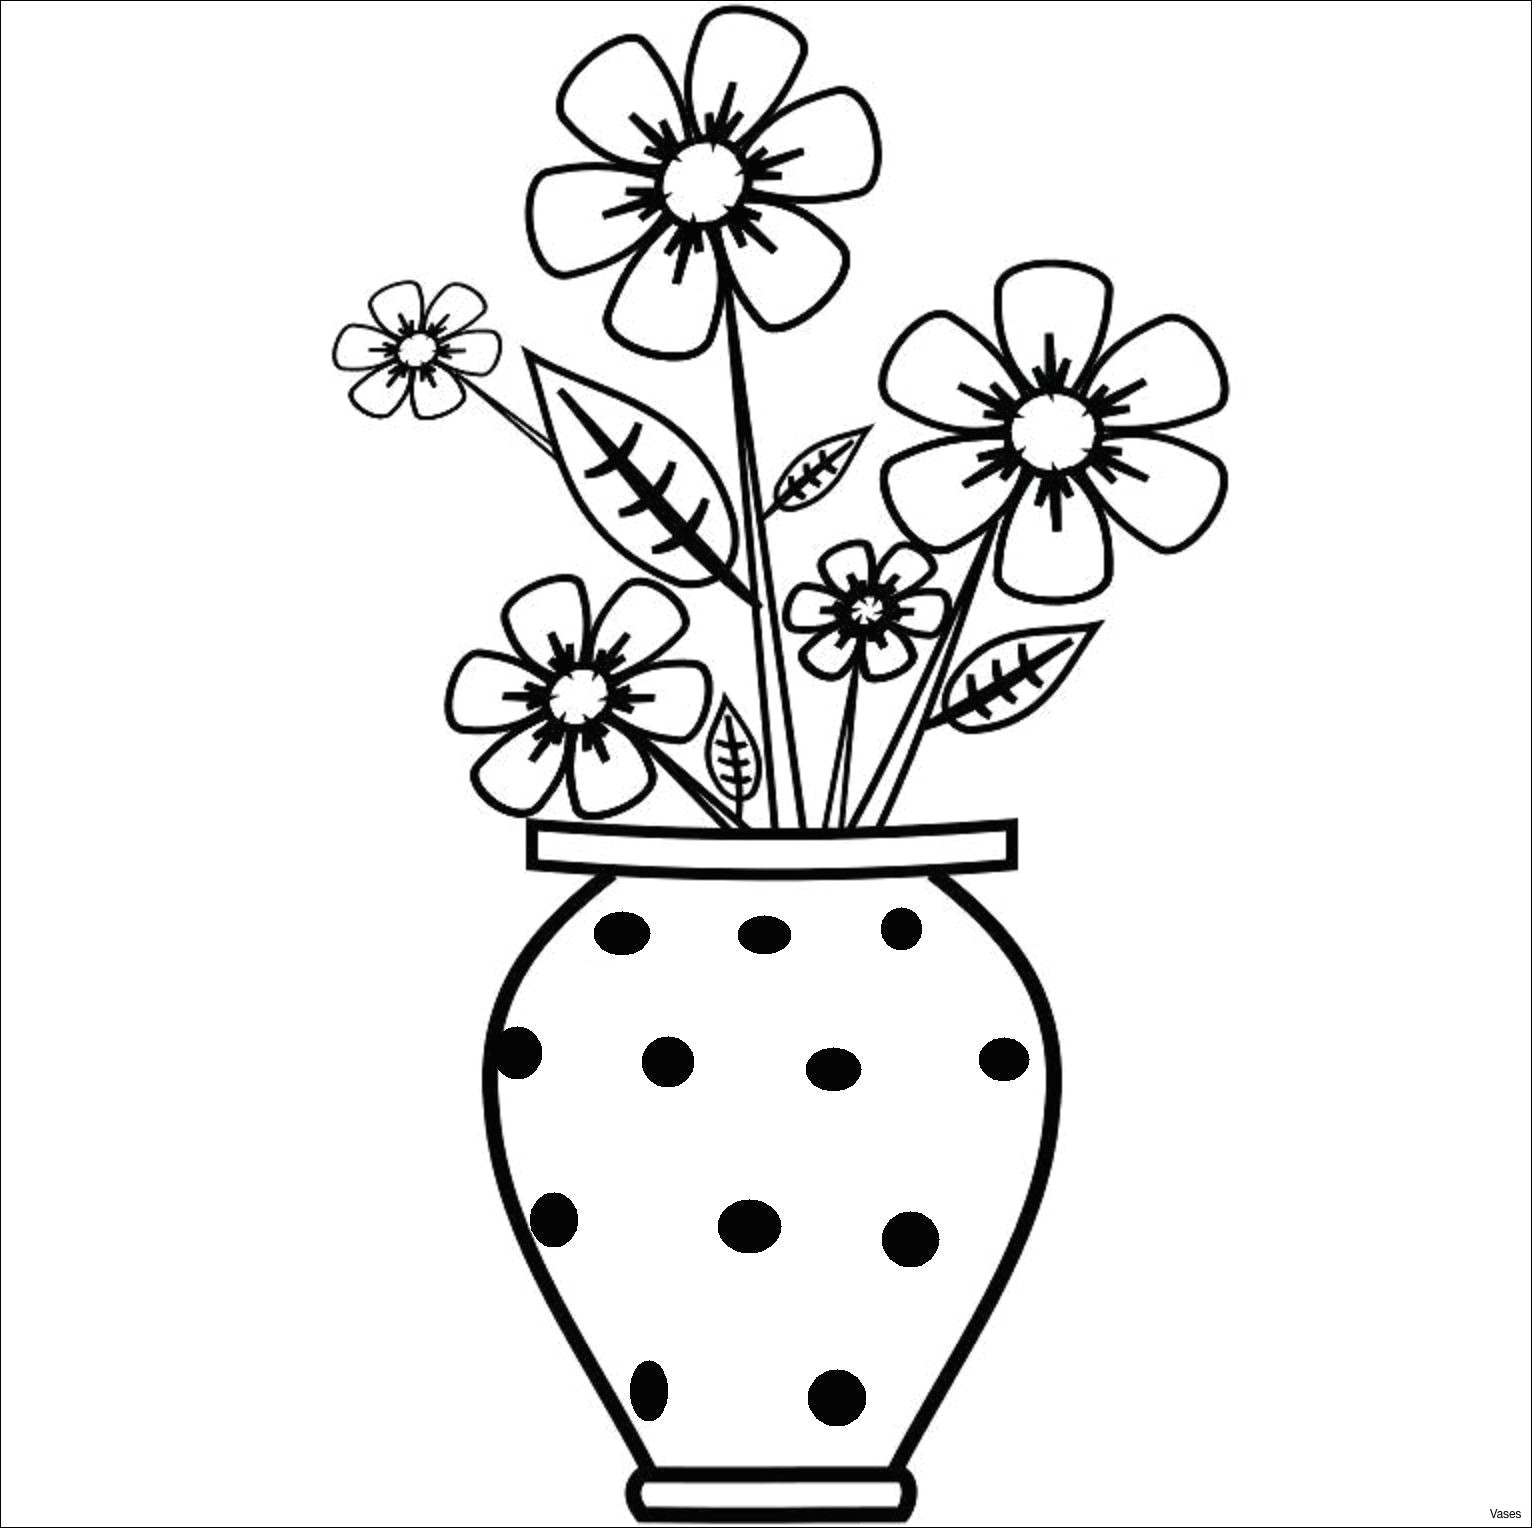 Cool Easy Drawings Of Roses Step by Step Images Of Easy Drawings Vase Art Drawings How to Draw A Vase Step 2h